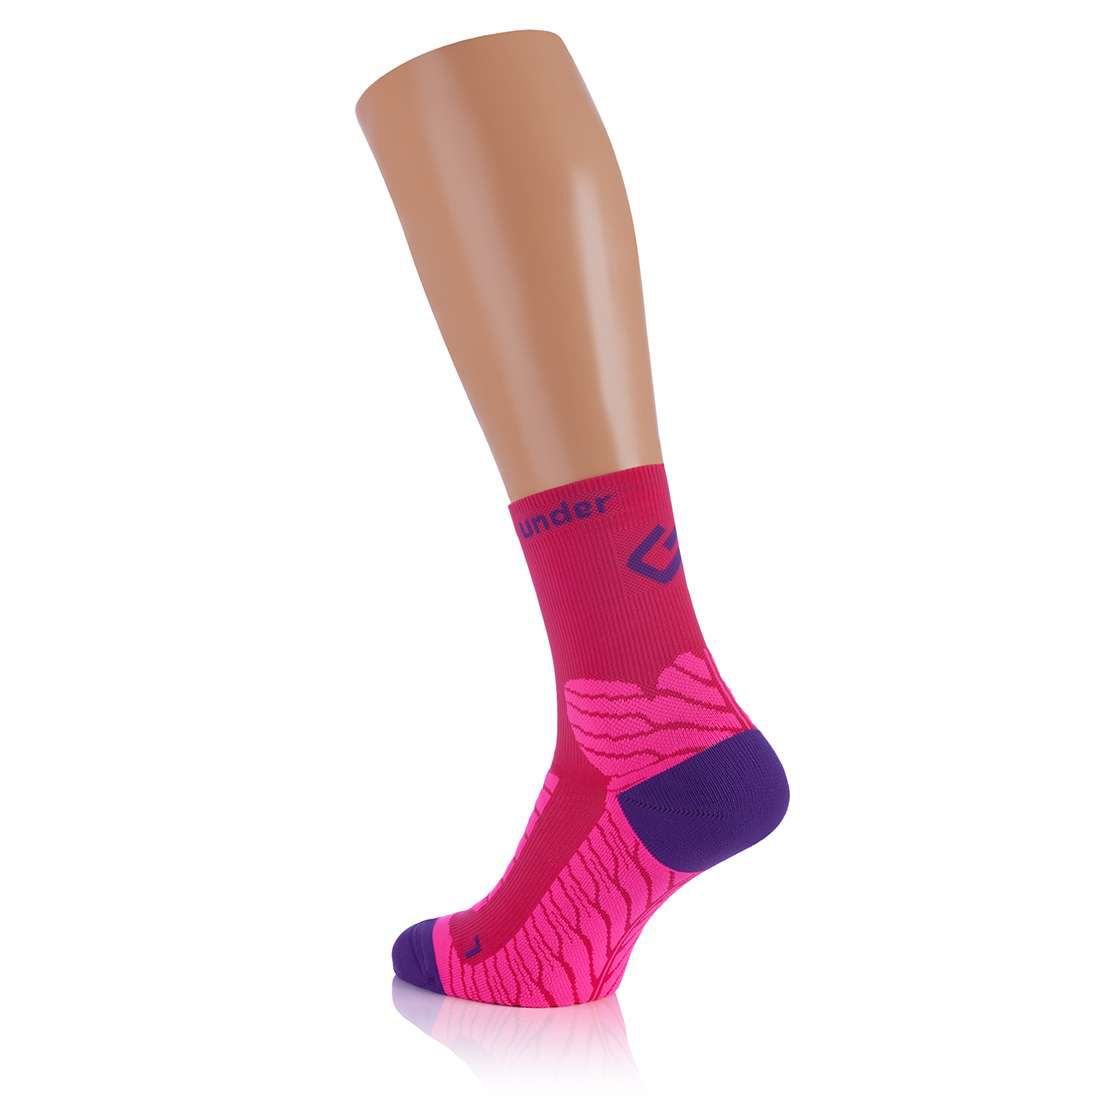 UNDER PRESSURE SOCKX - halbhohe Socken mit Kompression